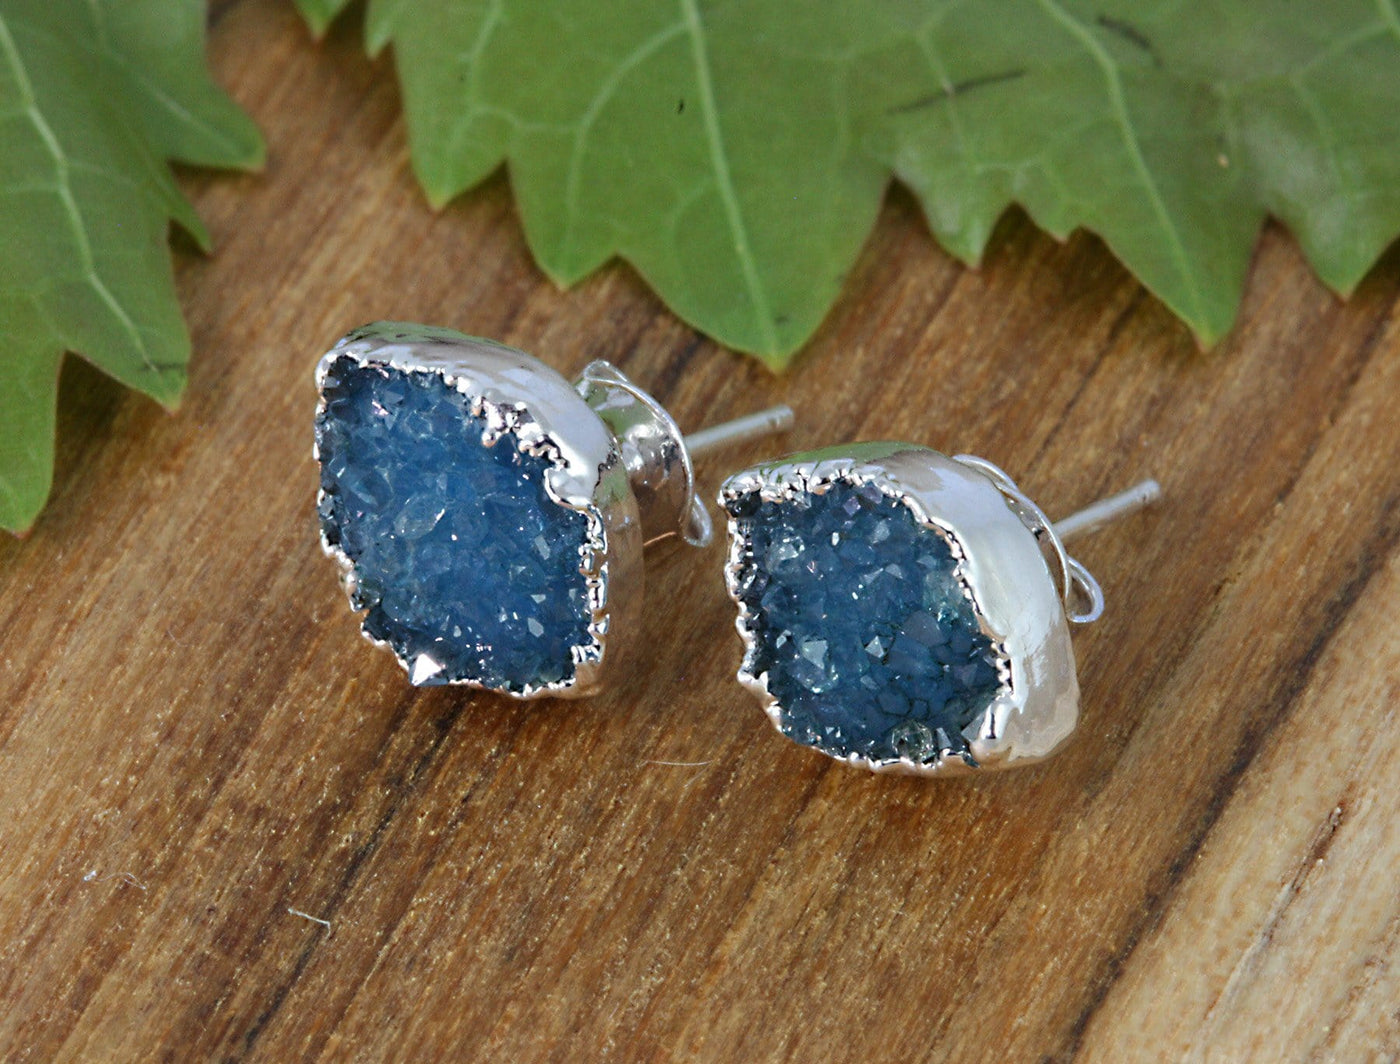 blue druzy earrings on a table